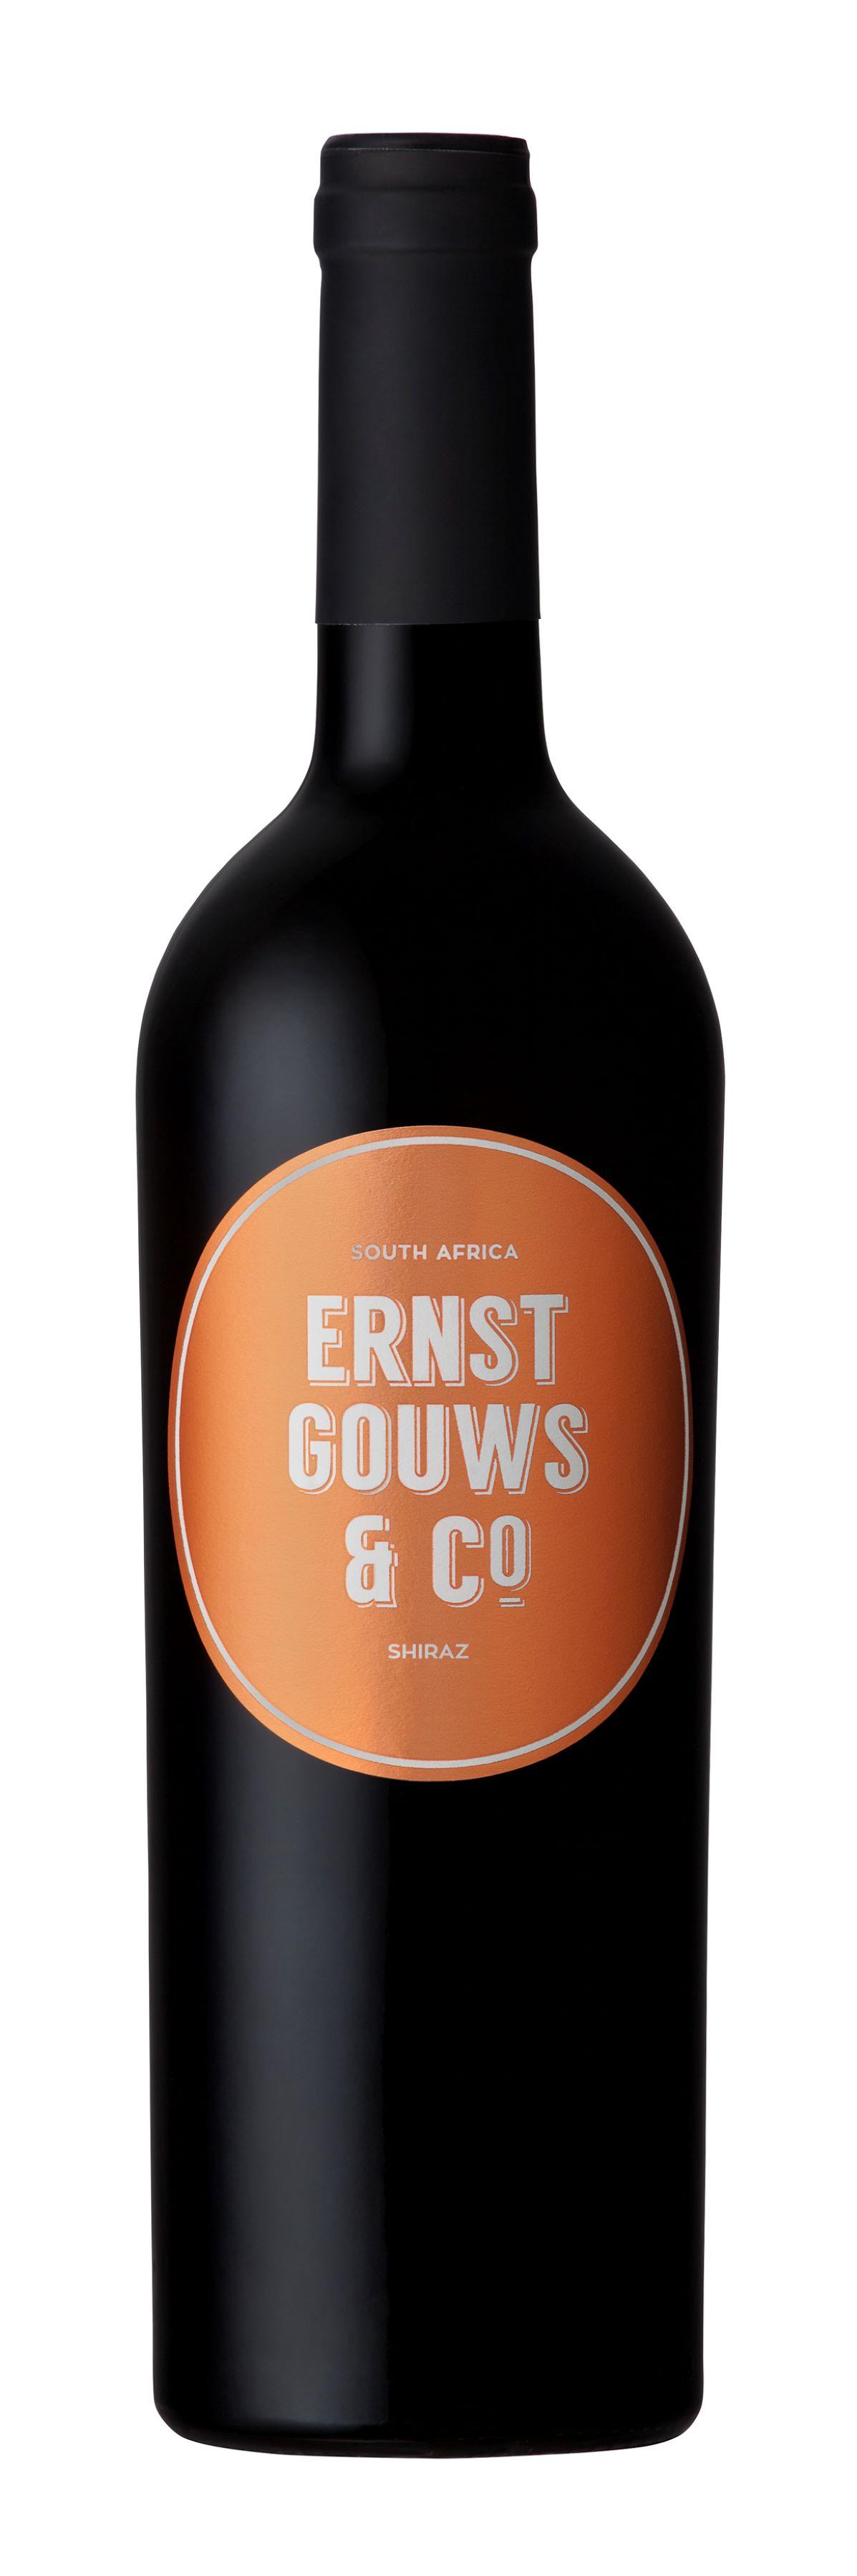 Ernst Gouws & Co Wines